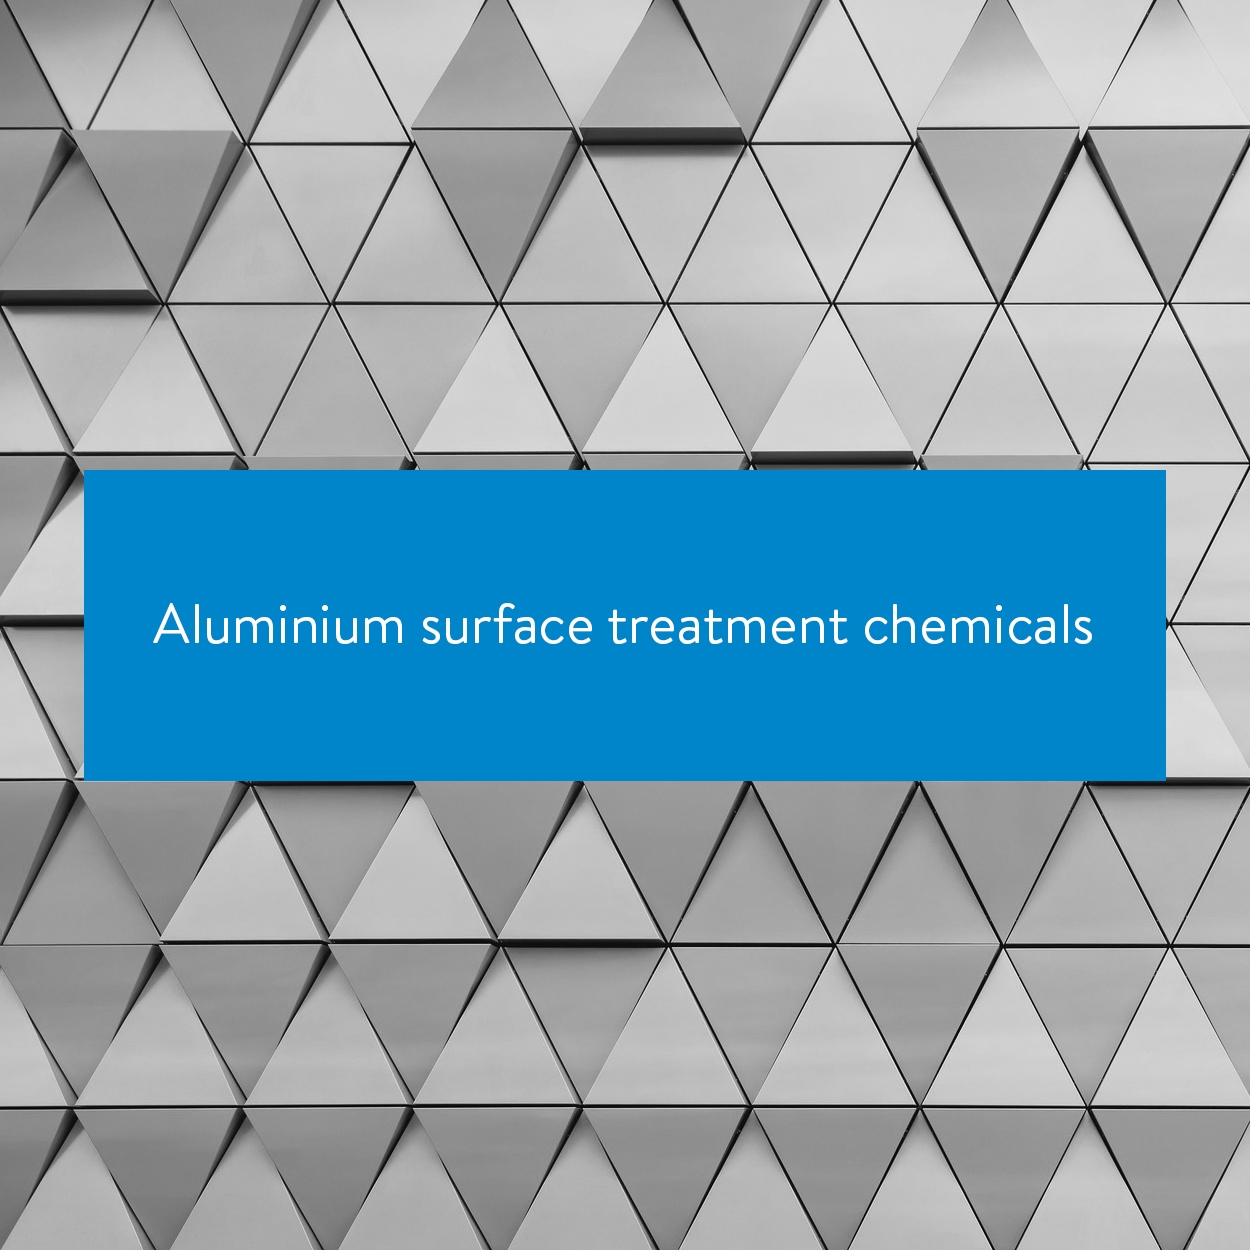 Aluminium surface treatment chemicals